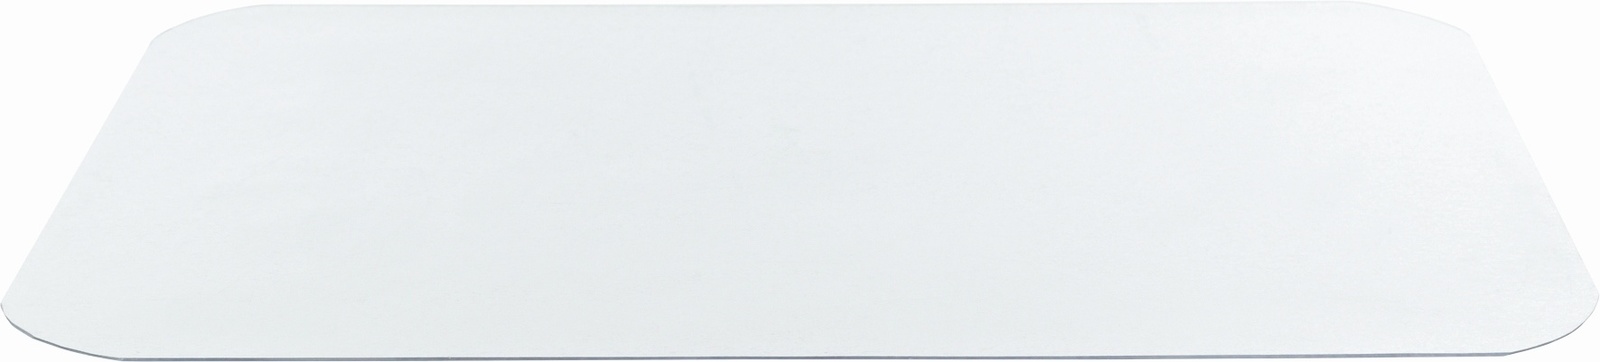 Trixie Trixie коврик под миску, прозрачный (48×30см) trixie trixie коврик под миску кошечка 50 г